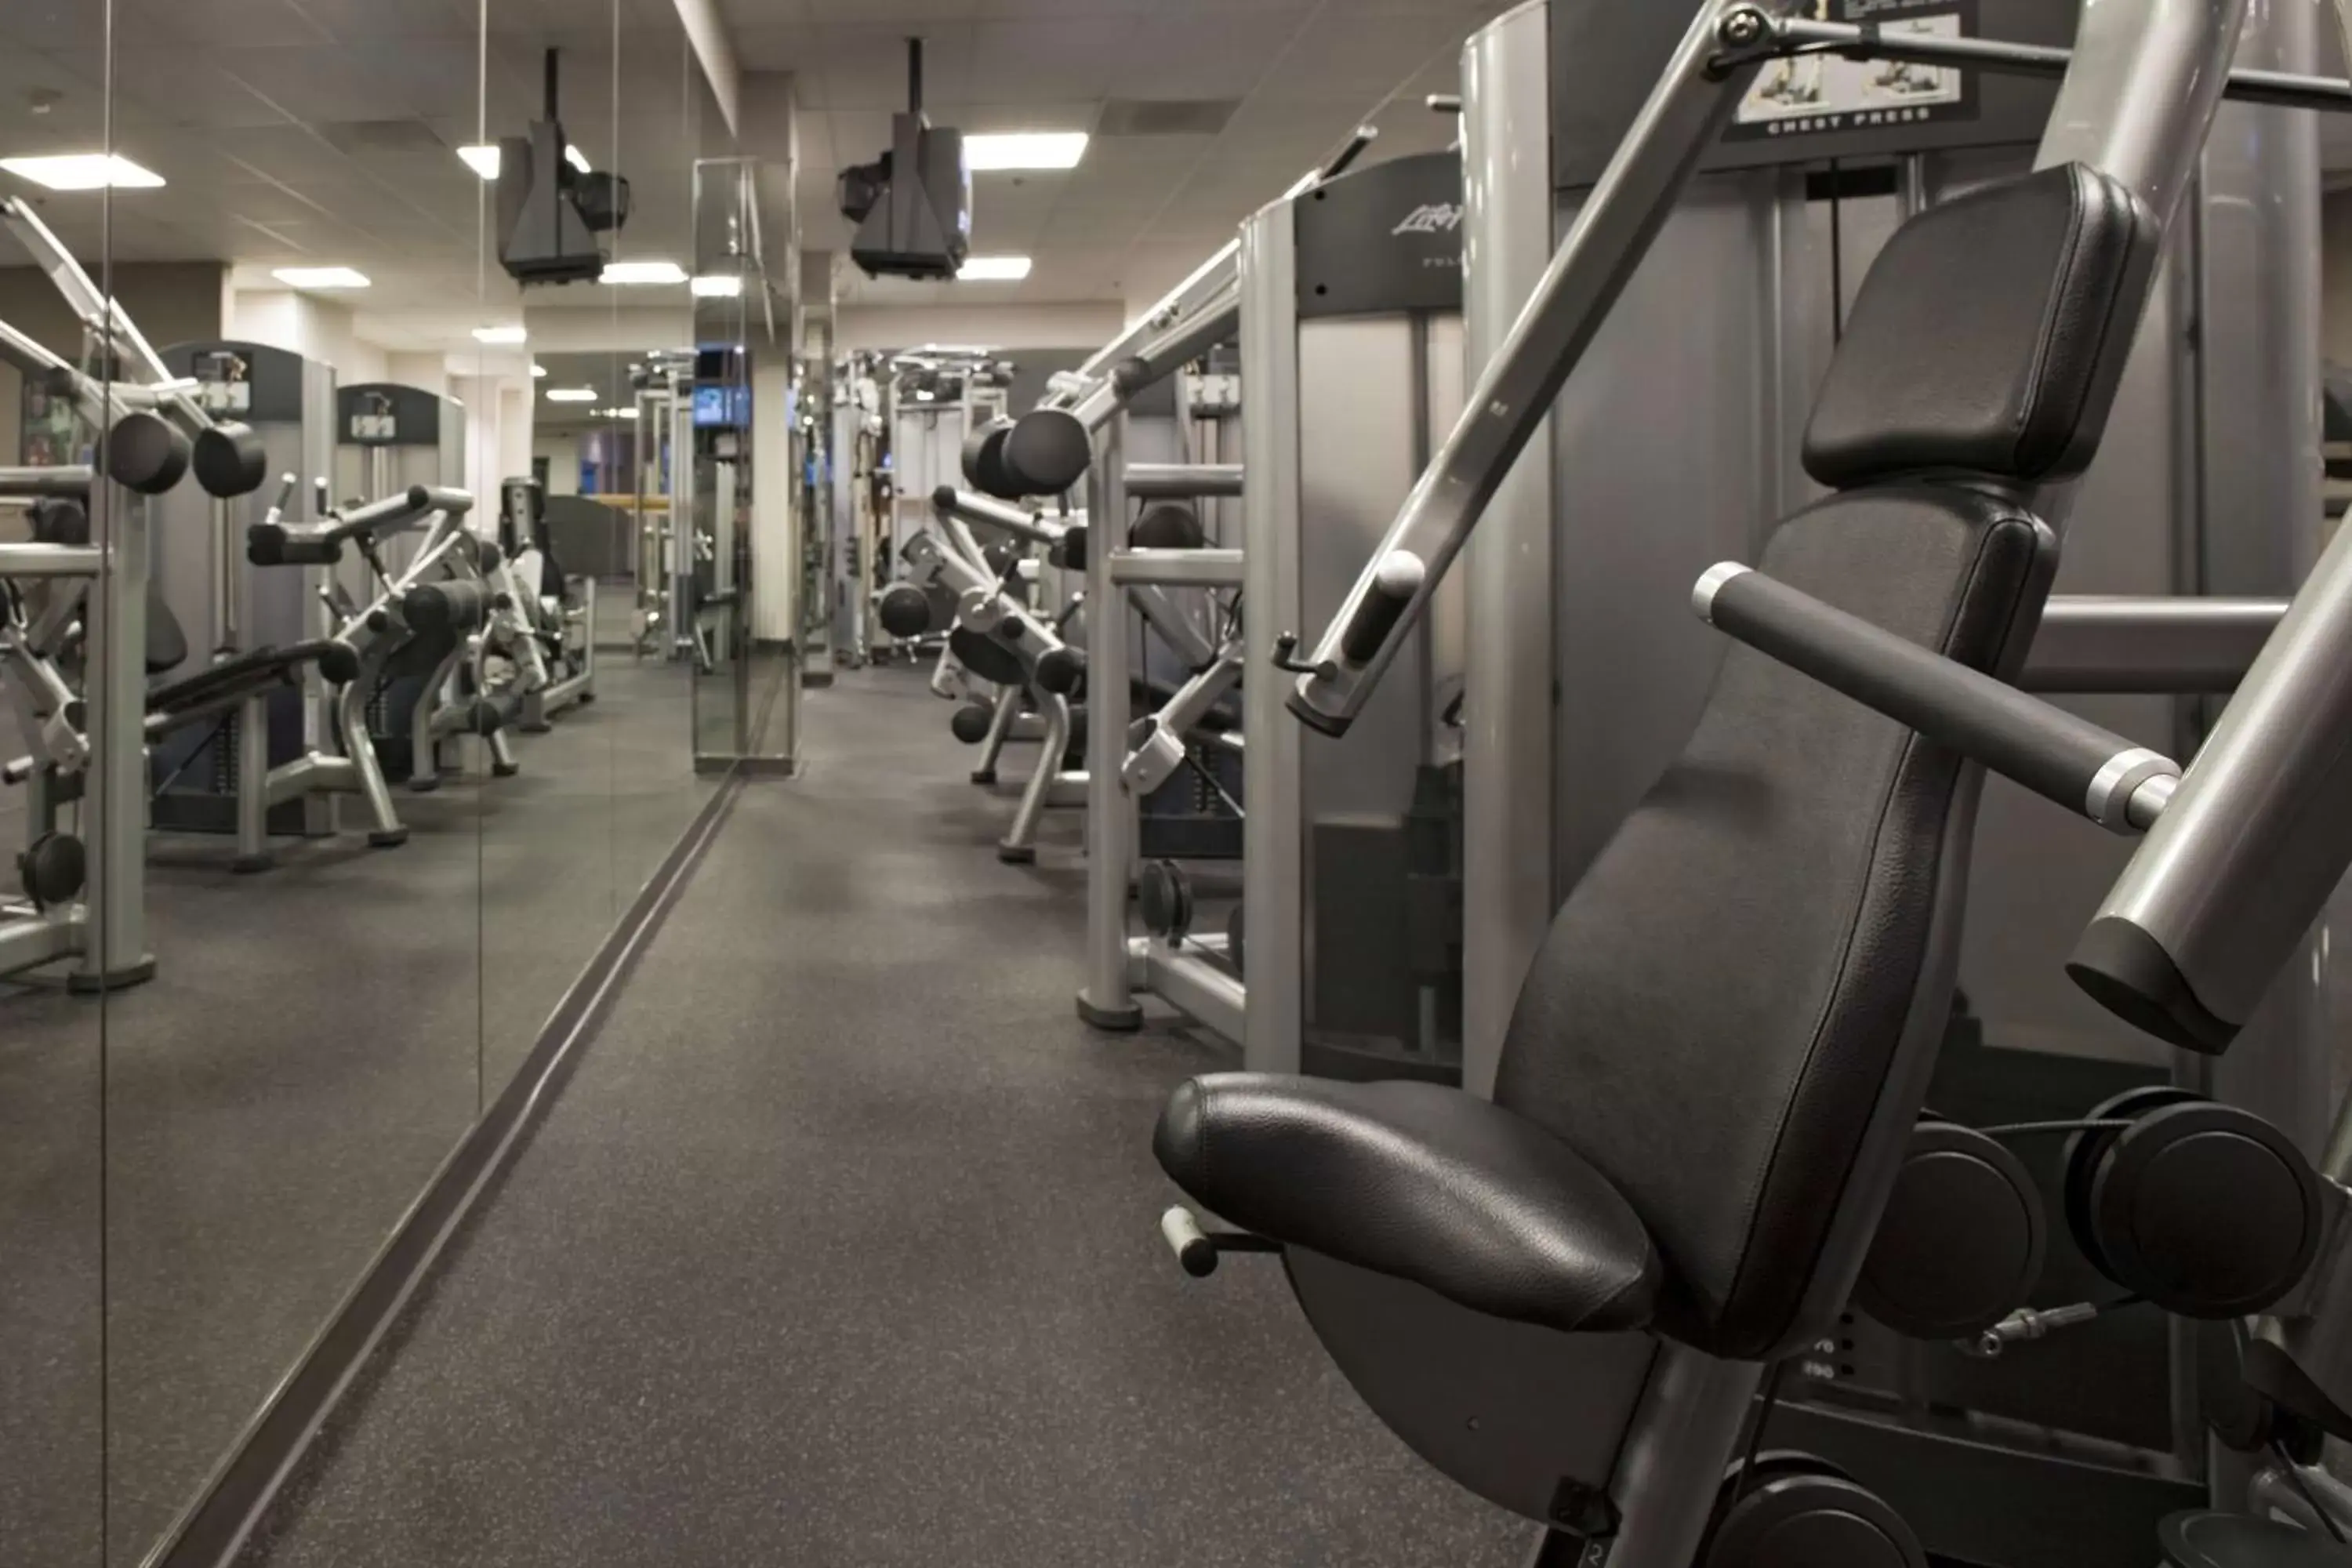 Fitness centre/facilities, Fitness Center/Facilities in Hyatt Regency Sacramento